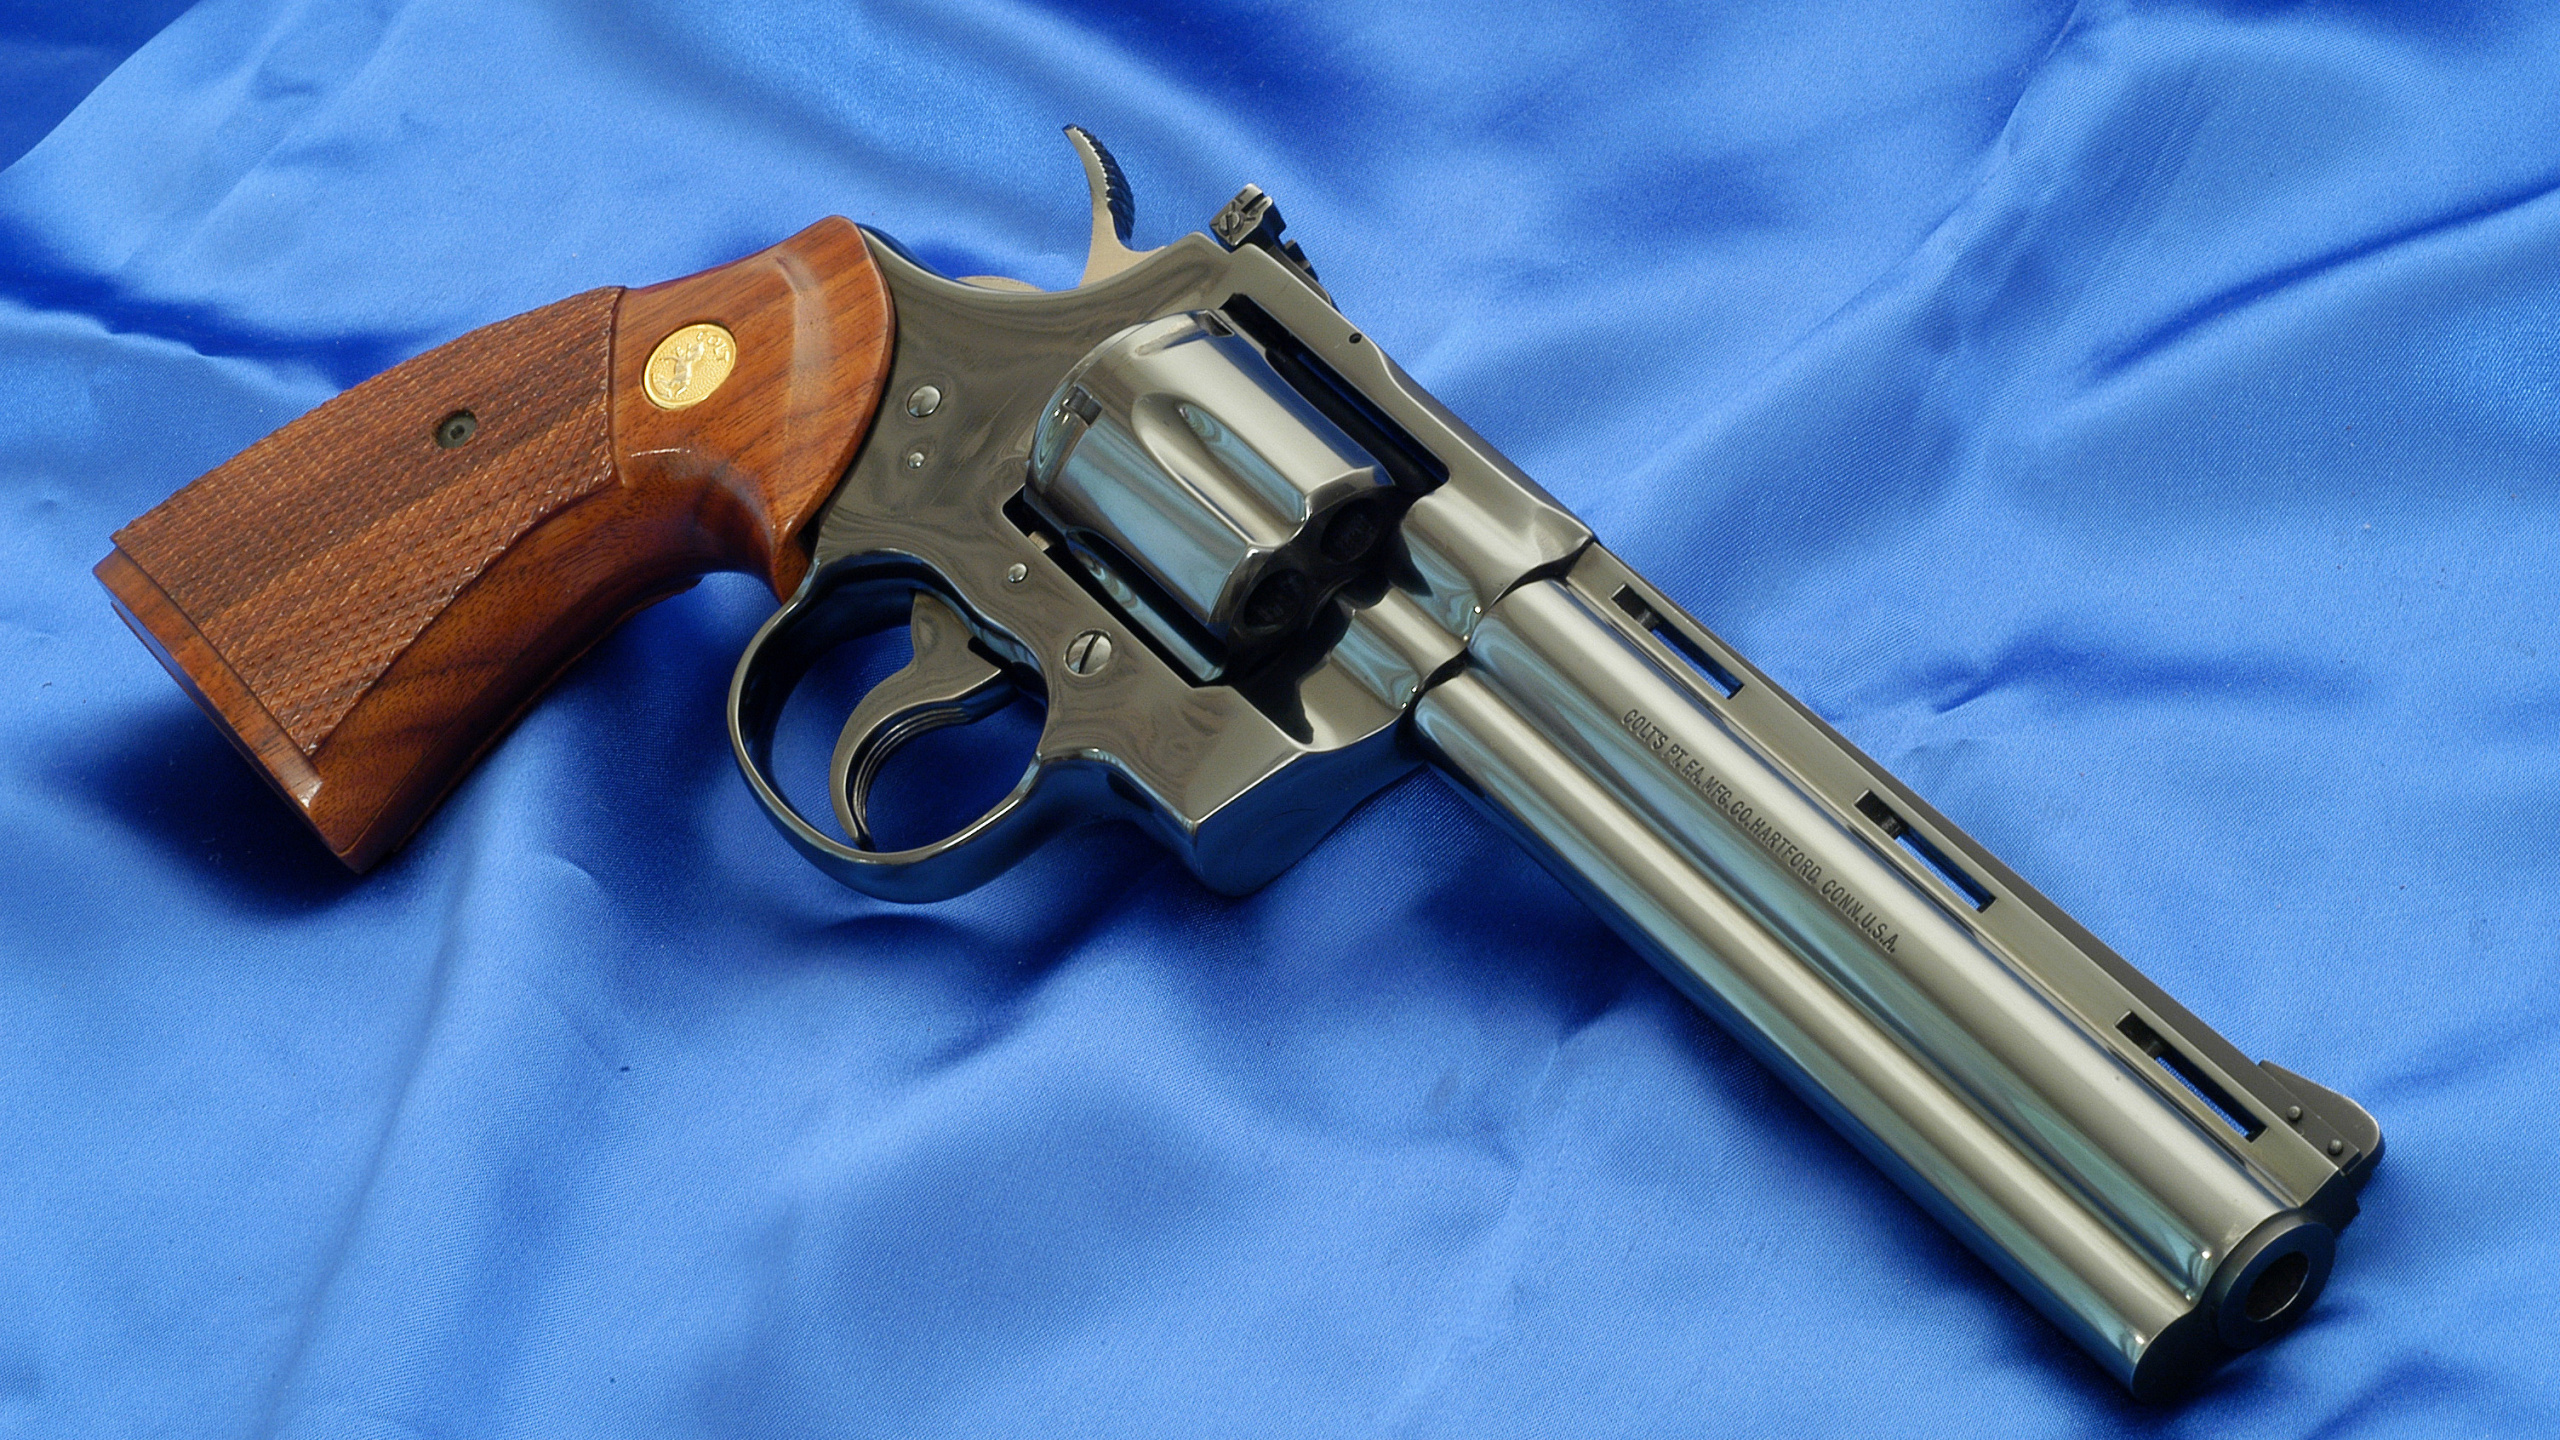 Revolver Colt Python, Handgun, Gun, M1911 Pistol, Firearm. Wallpaper in 2560x1440 Resolution